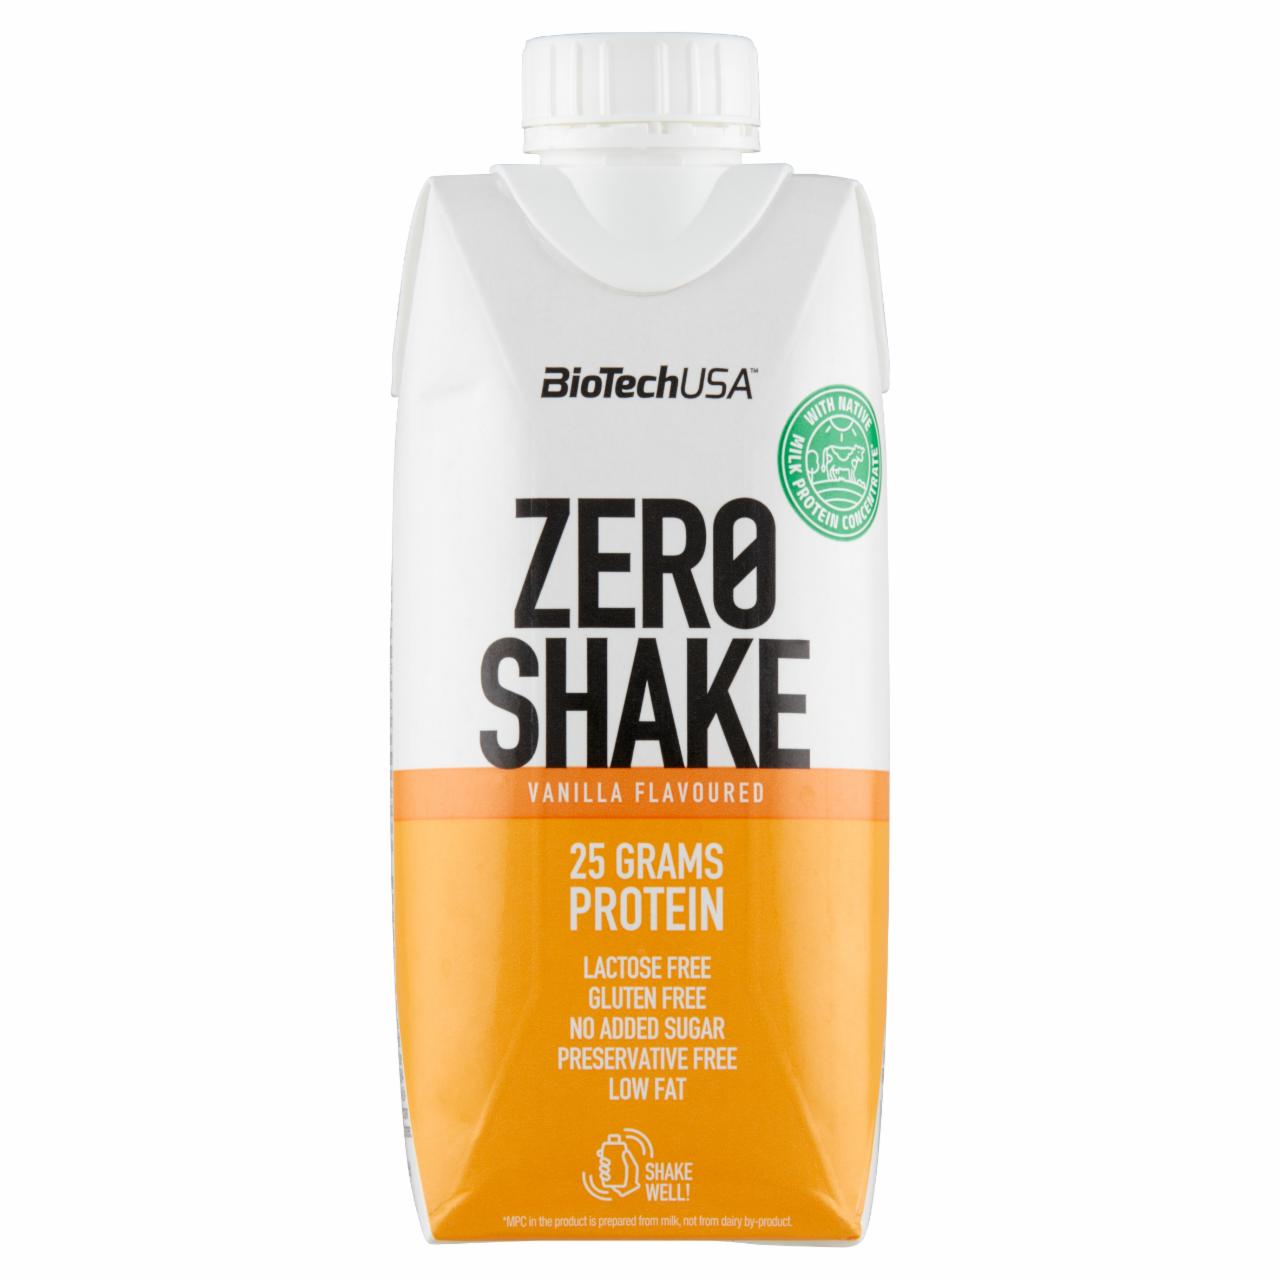 Képek - BioTechUSA Zero Shake vanília ízű UHT sovány tejfehérje koncentrátum ital édesítőszerrel 330 ml